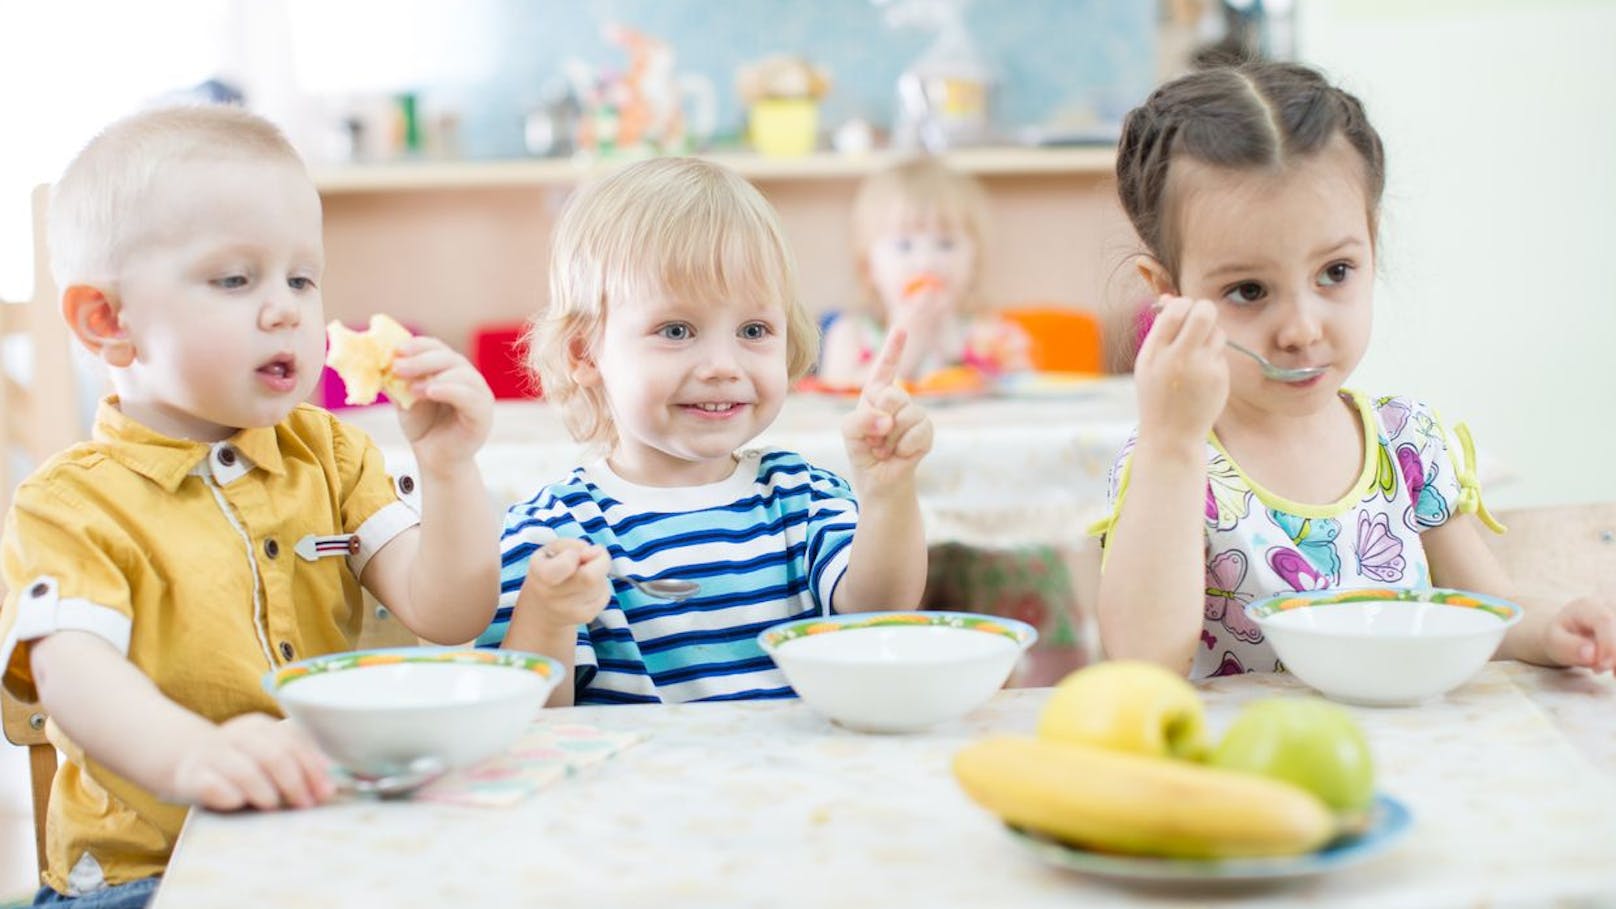 Menü in Kindergärten jetzt auch gluten- und laktosefrei